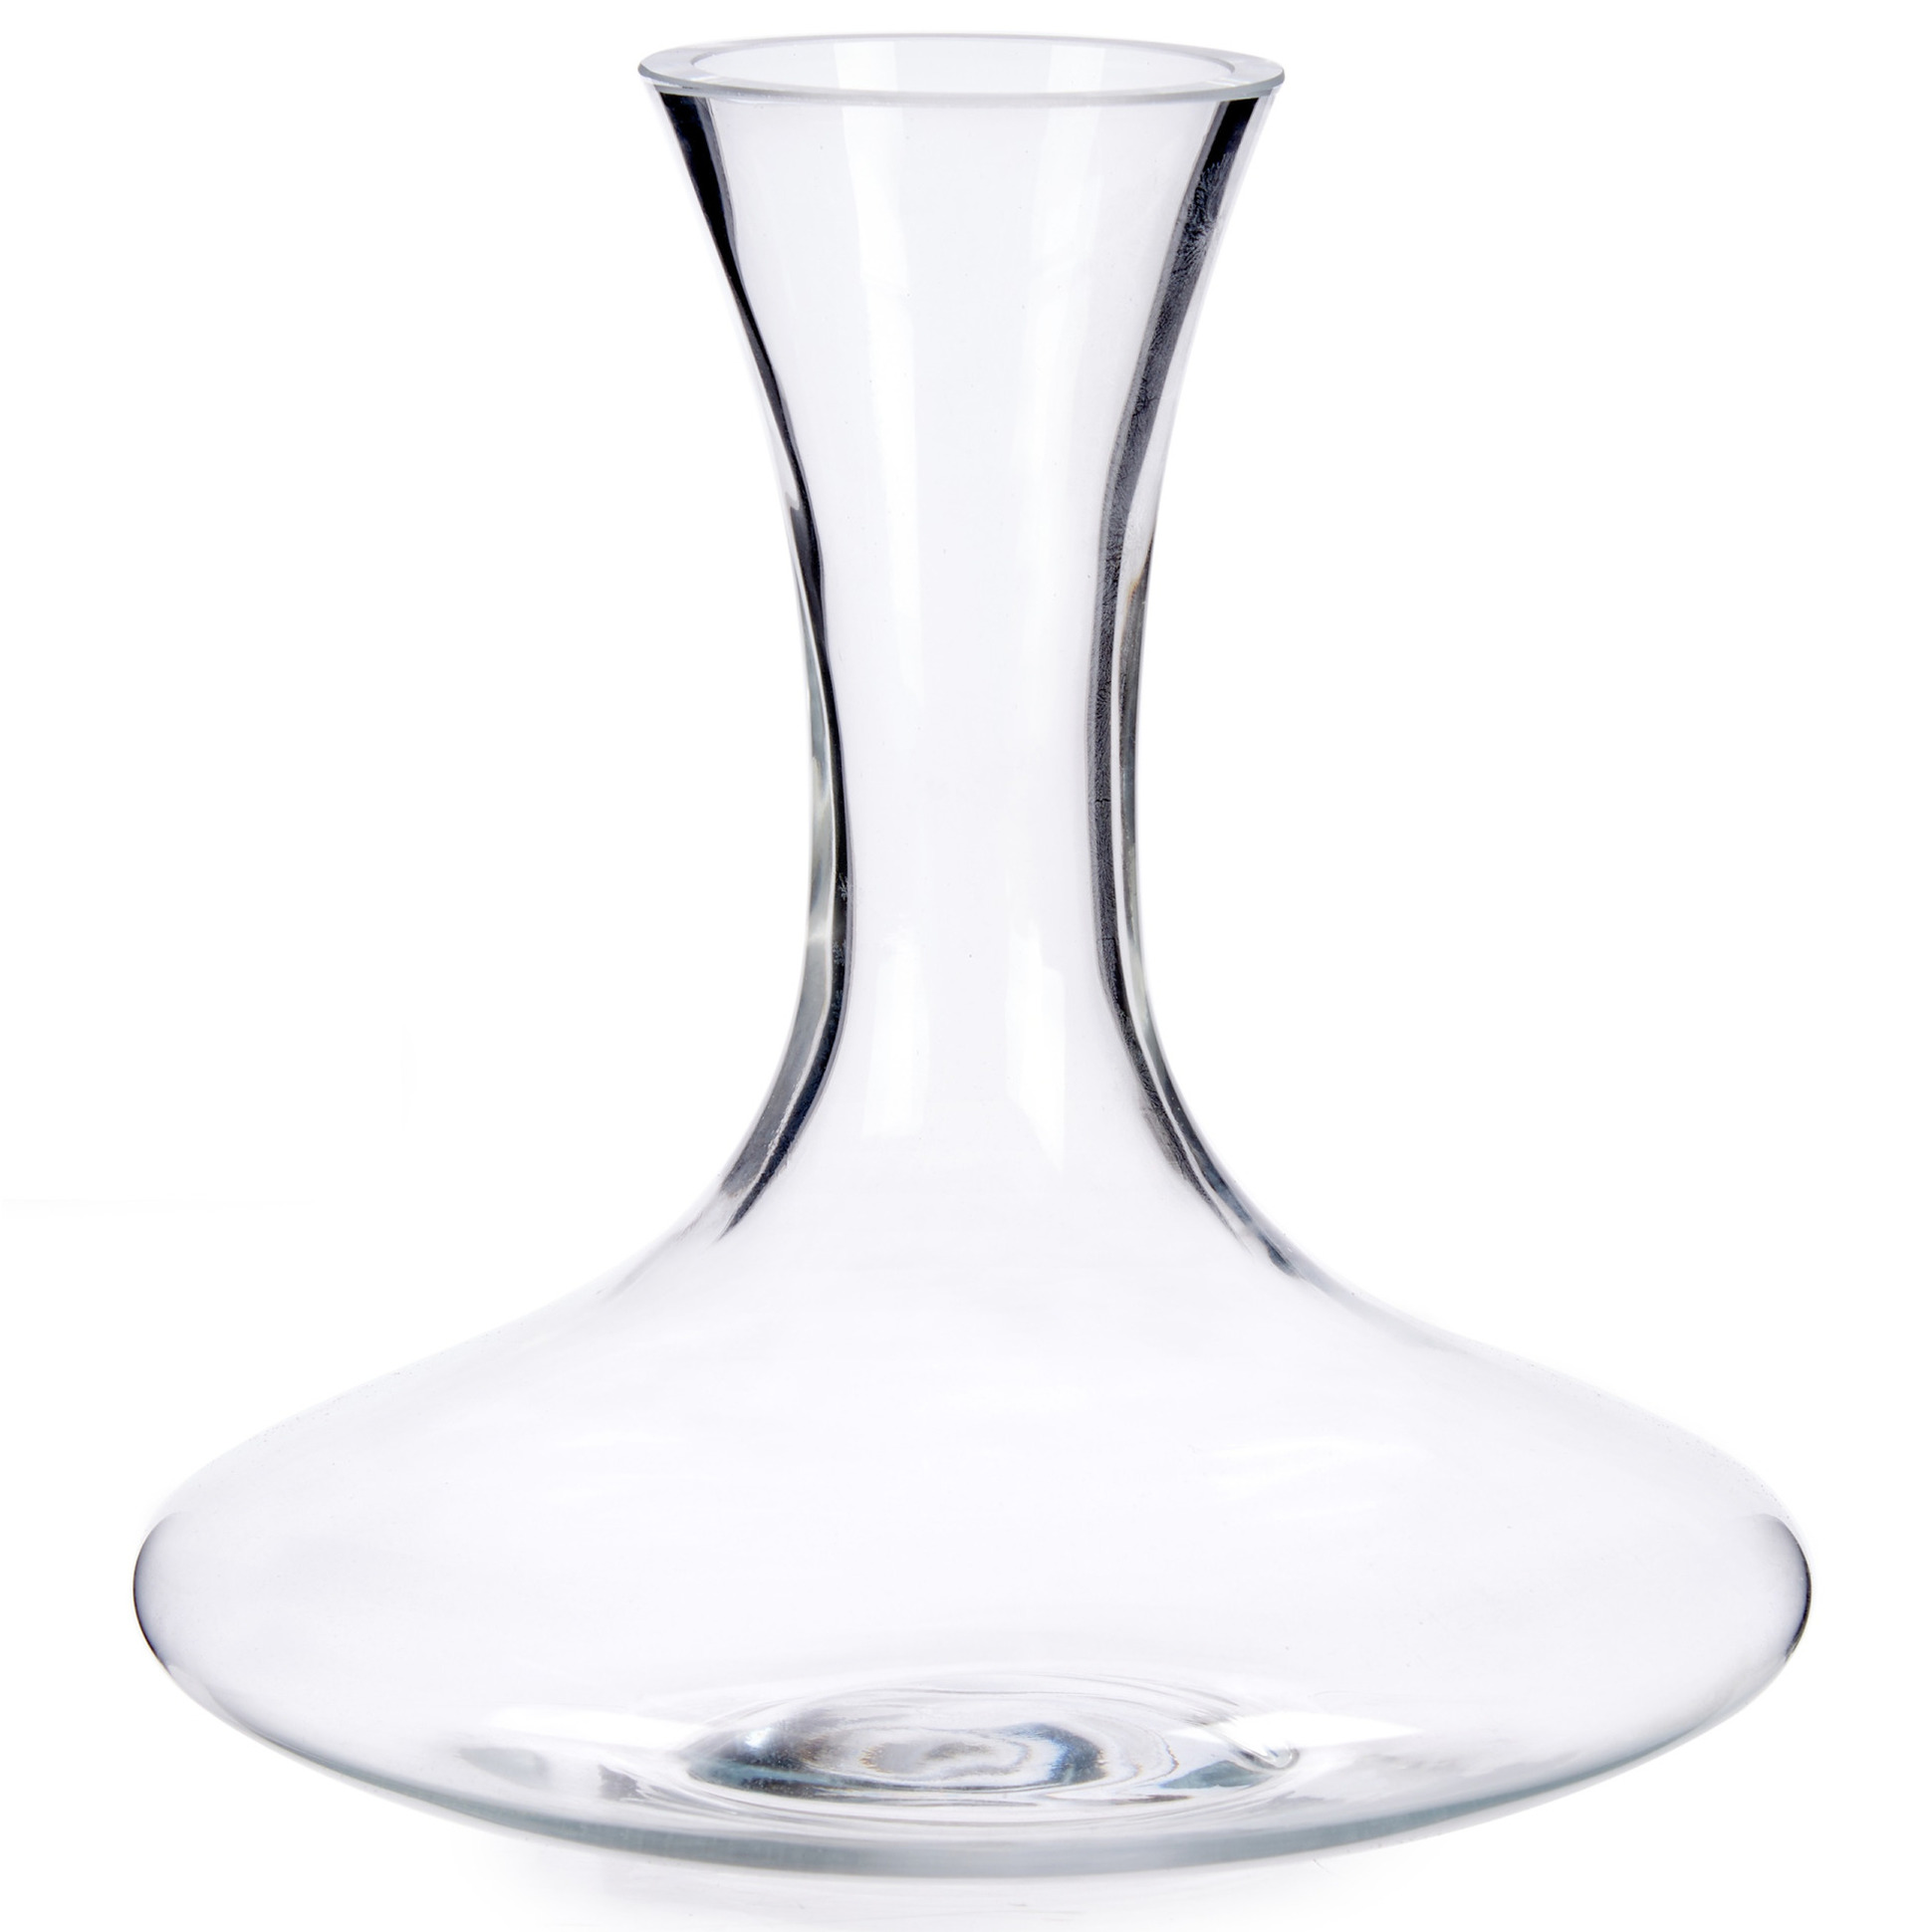 Glazen wijn karaf-decanteer kan 1,4 liter 21 x 21 cm